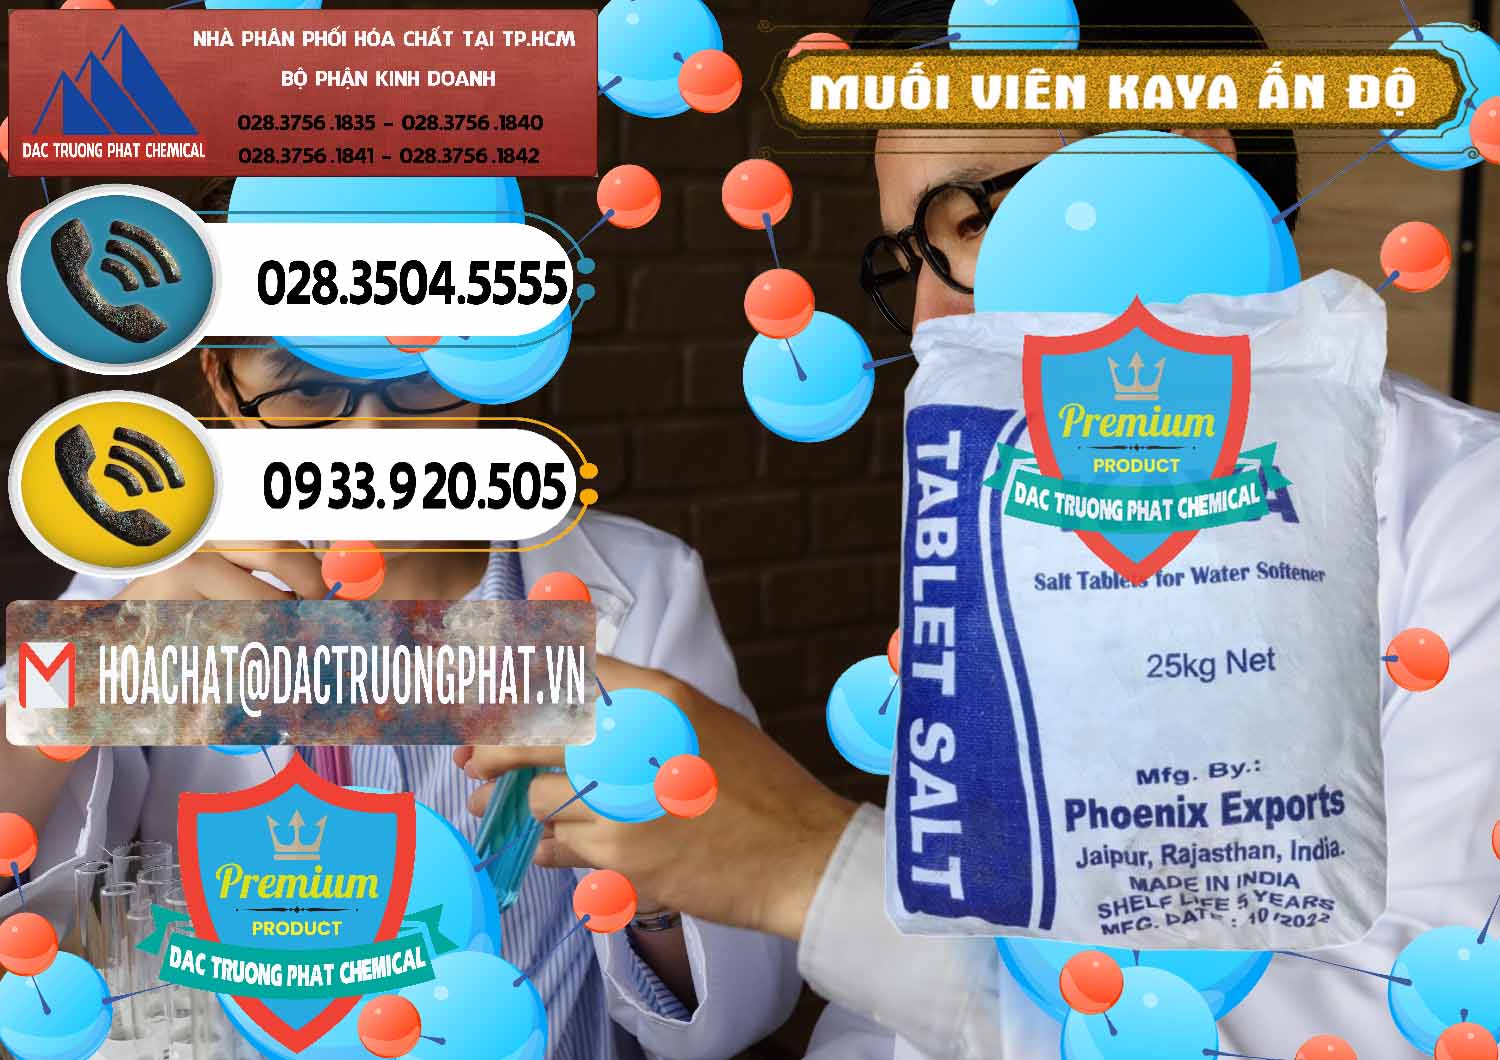 Nơi bán - cung ứng Muối NaCL – Sodium Chloride Dạng Viên Tablets Kaya Ấn Độ India - 0368 - Công ty phân phối và cung cấp hóa chất tại TP.HCM - hoachatdetnhuom.vn